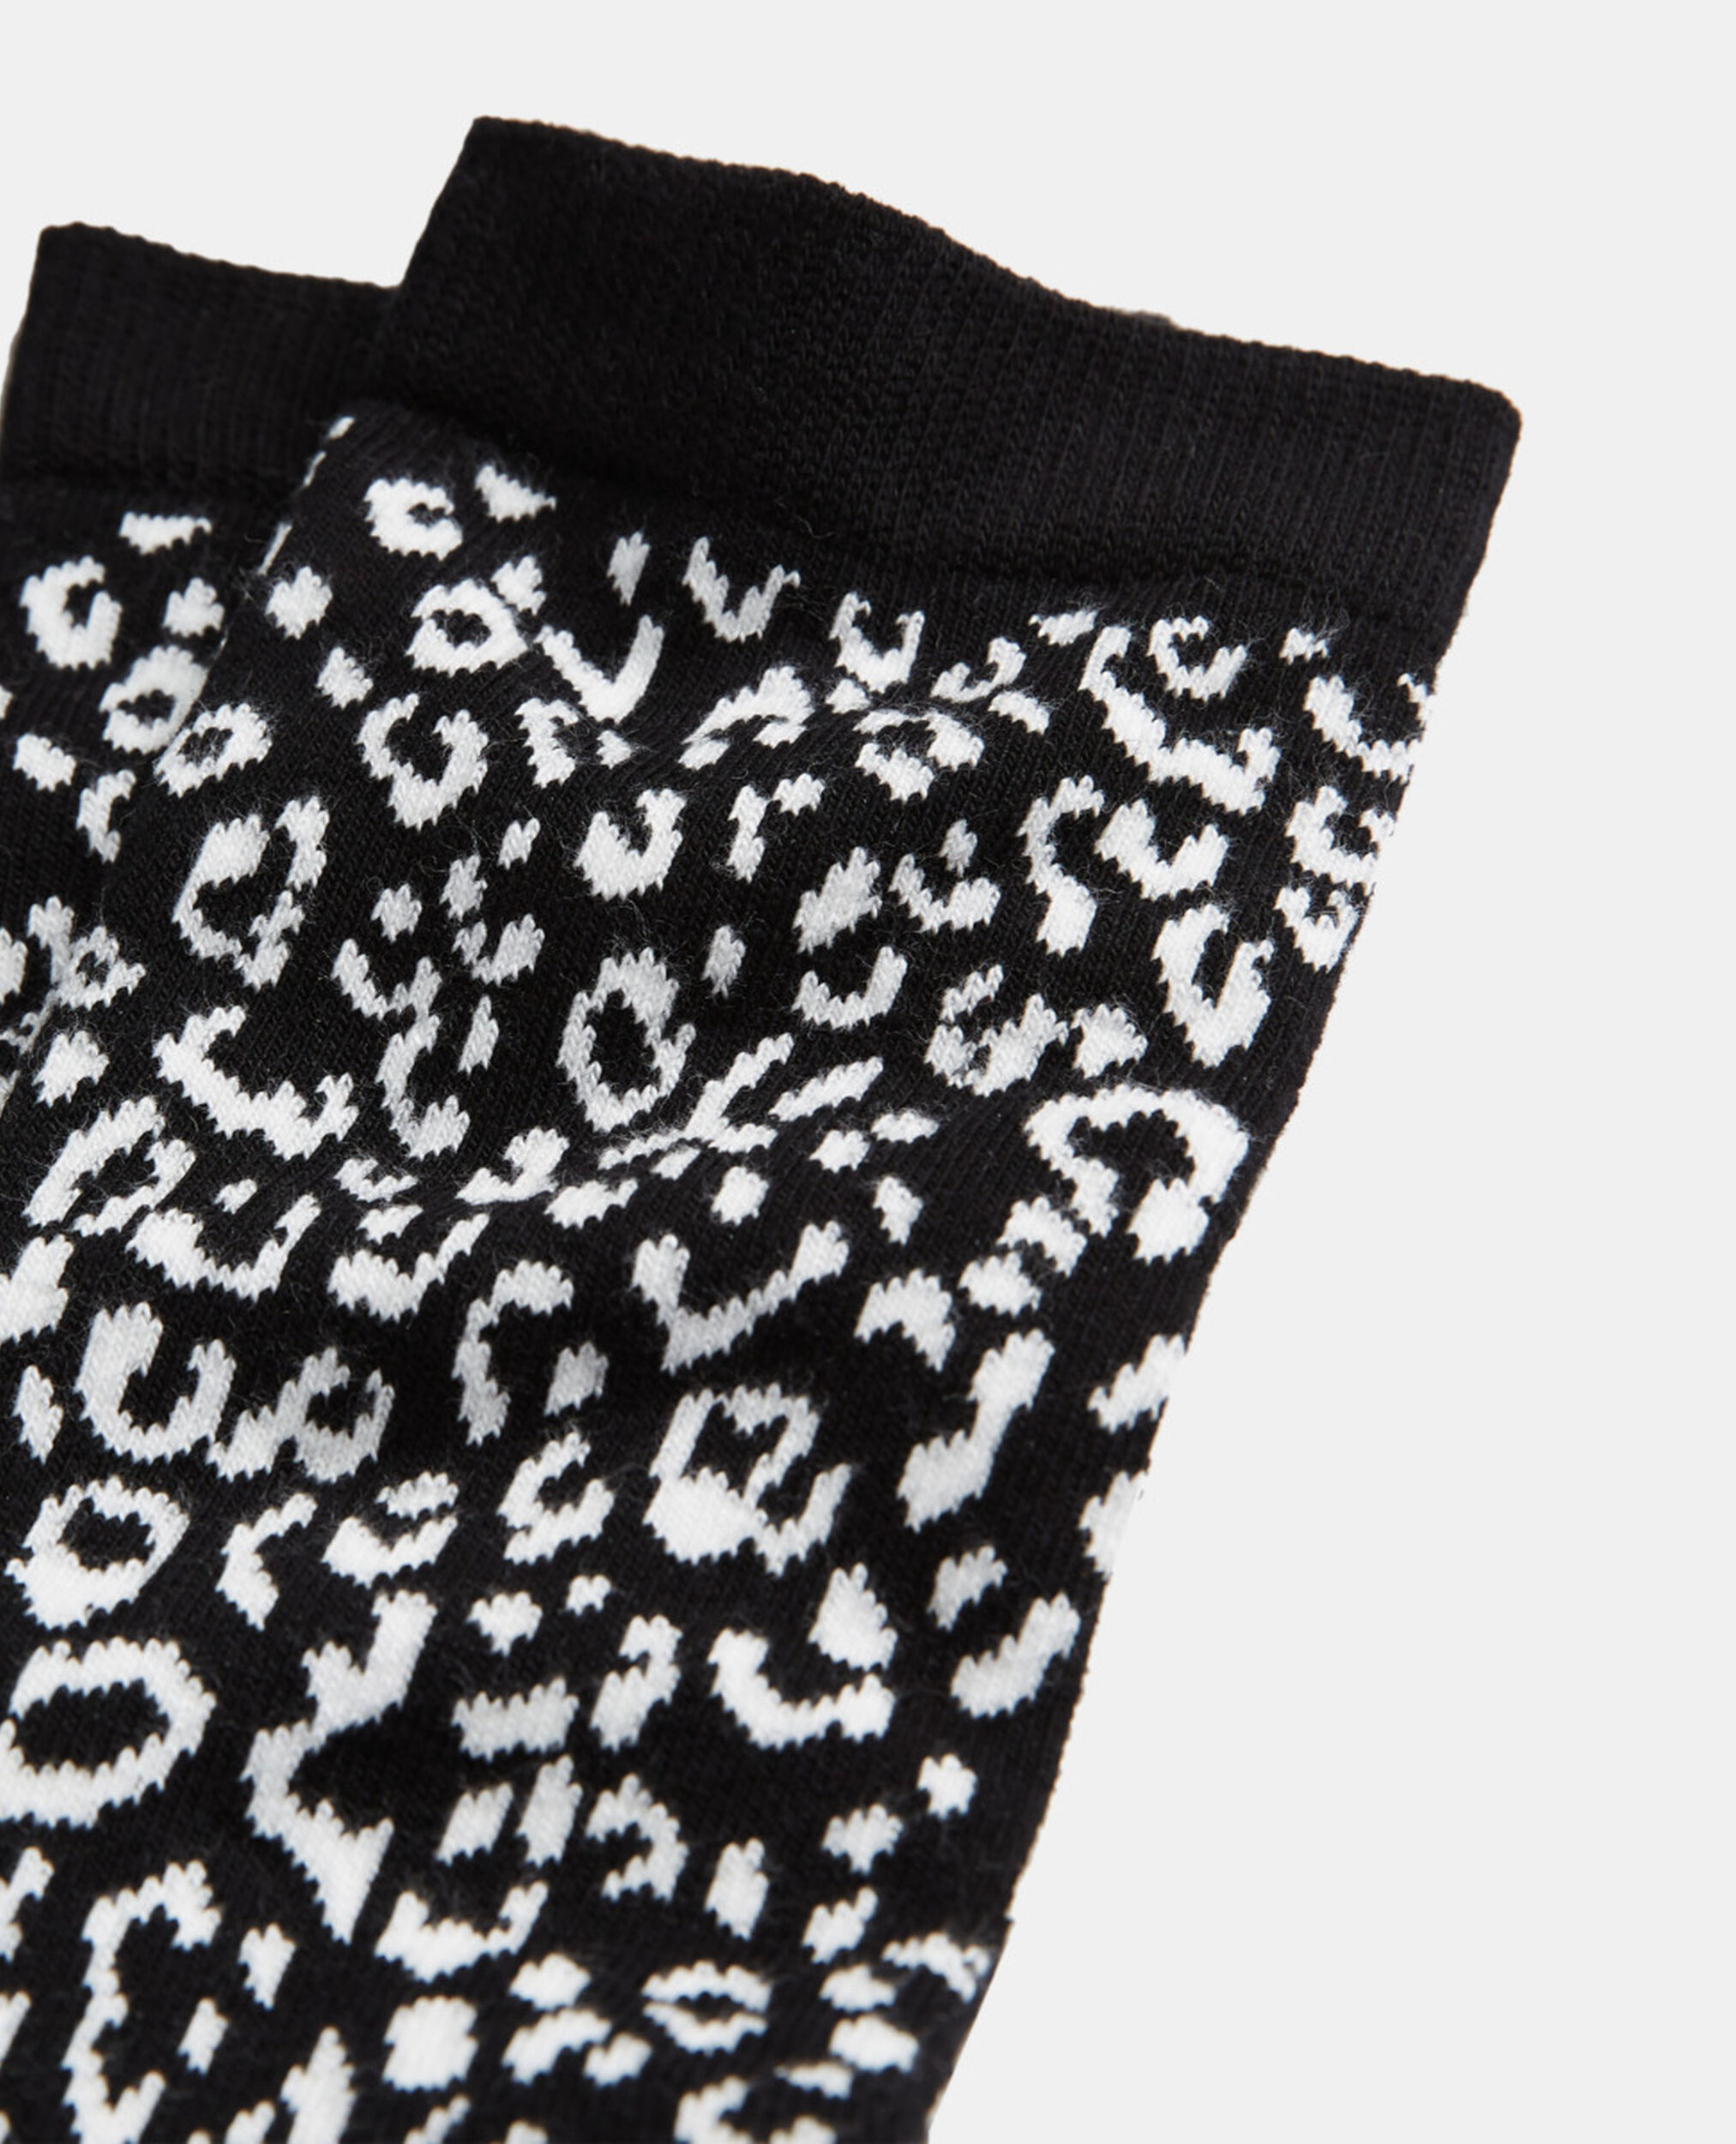 Chaussettes en coton léopard noires, BLACK WHITE, hi-res image number null